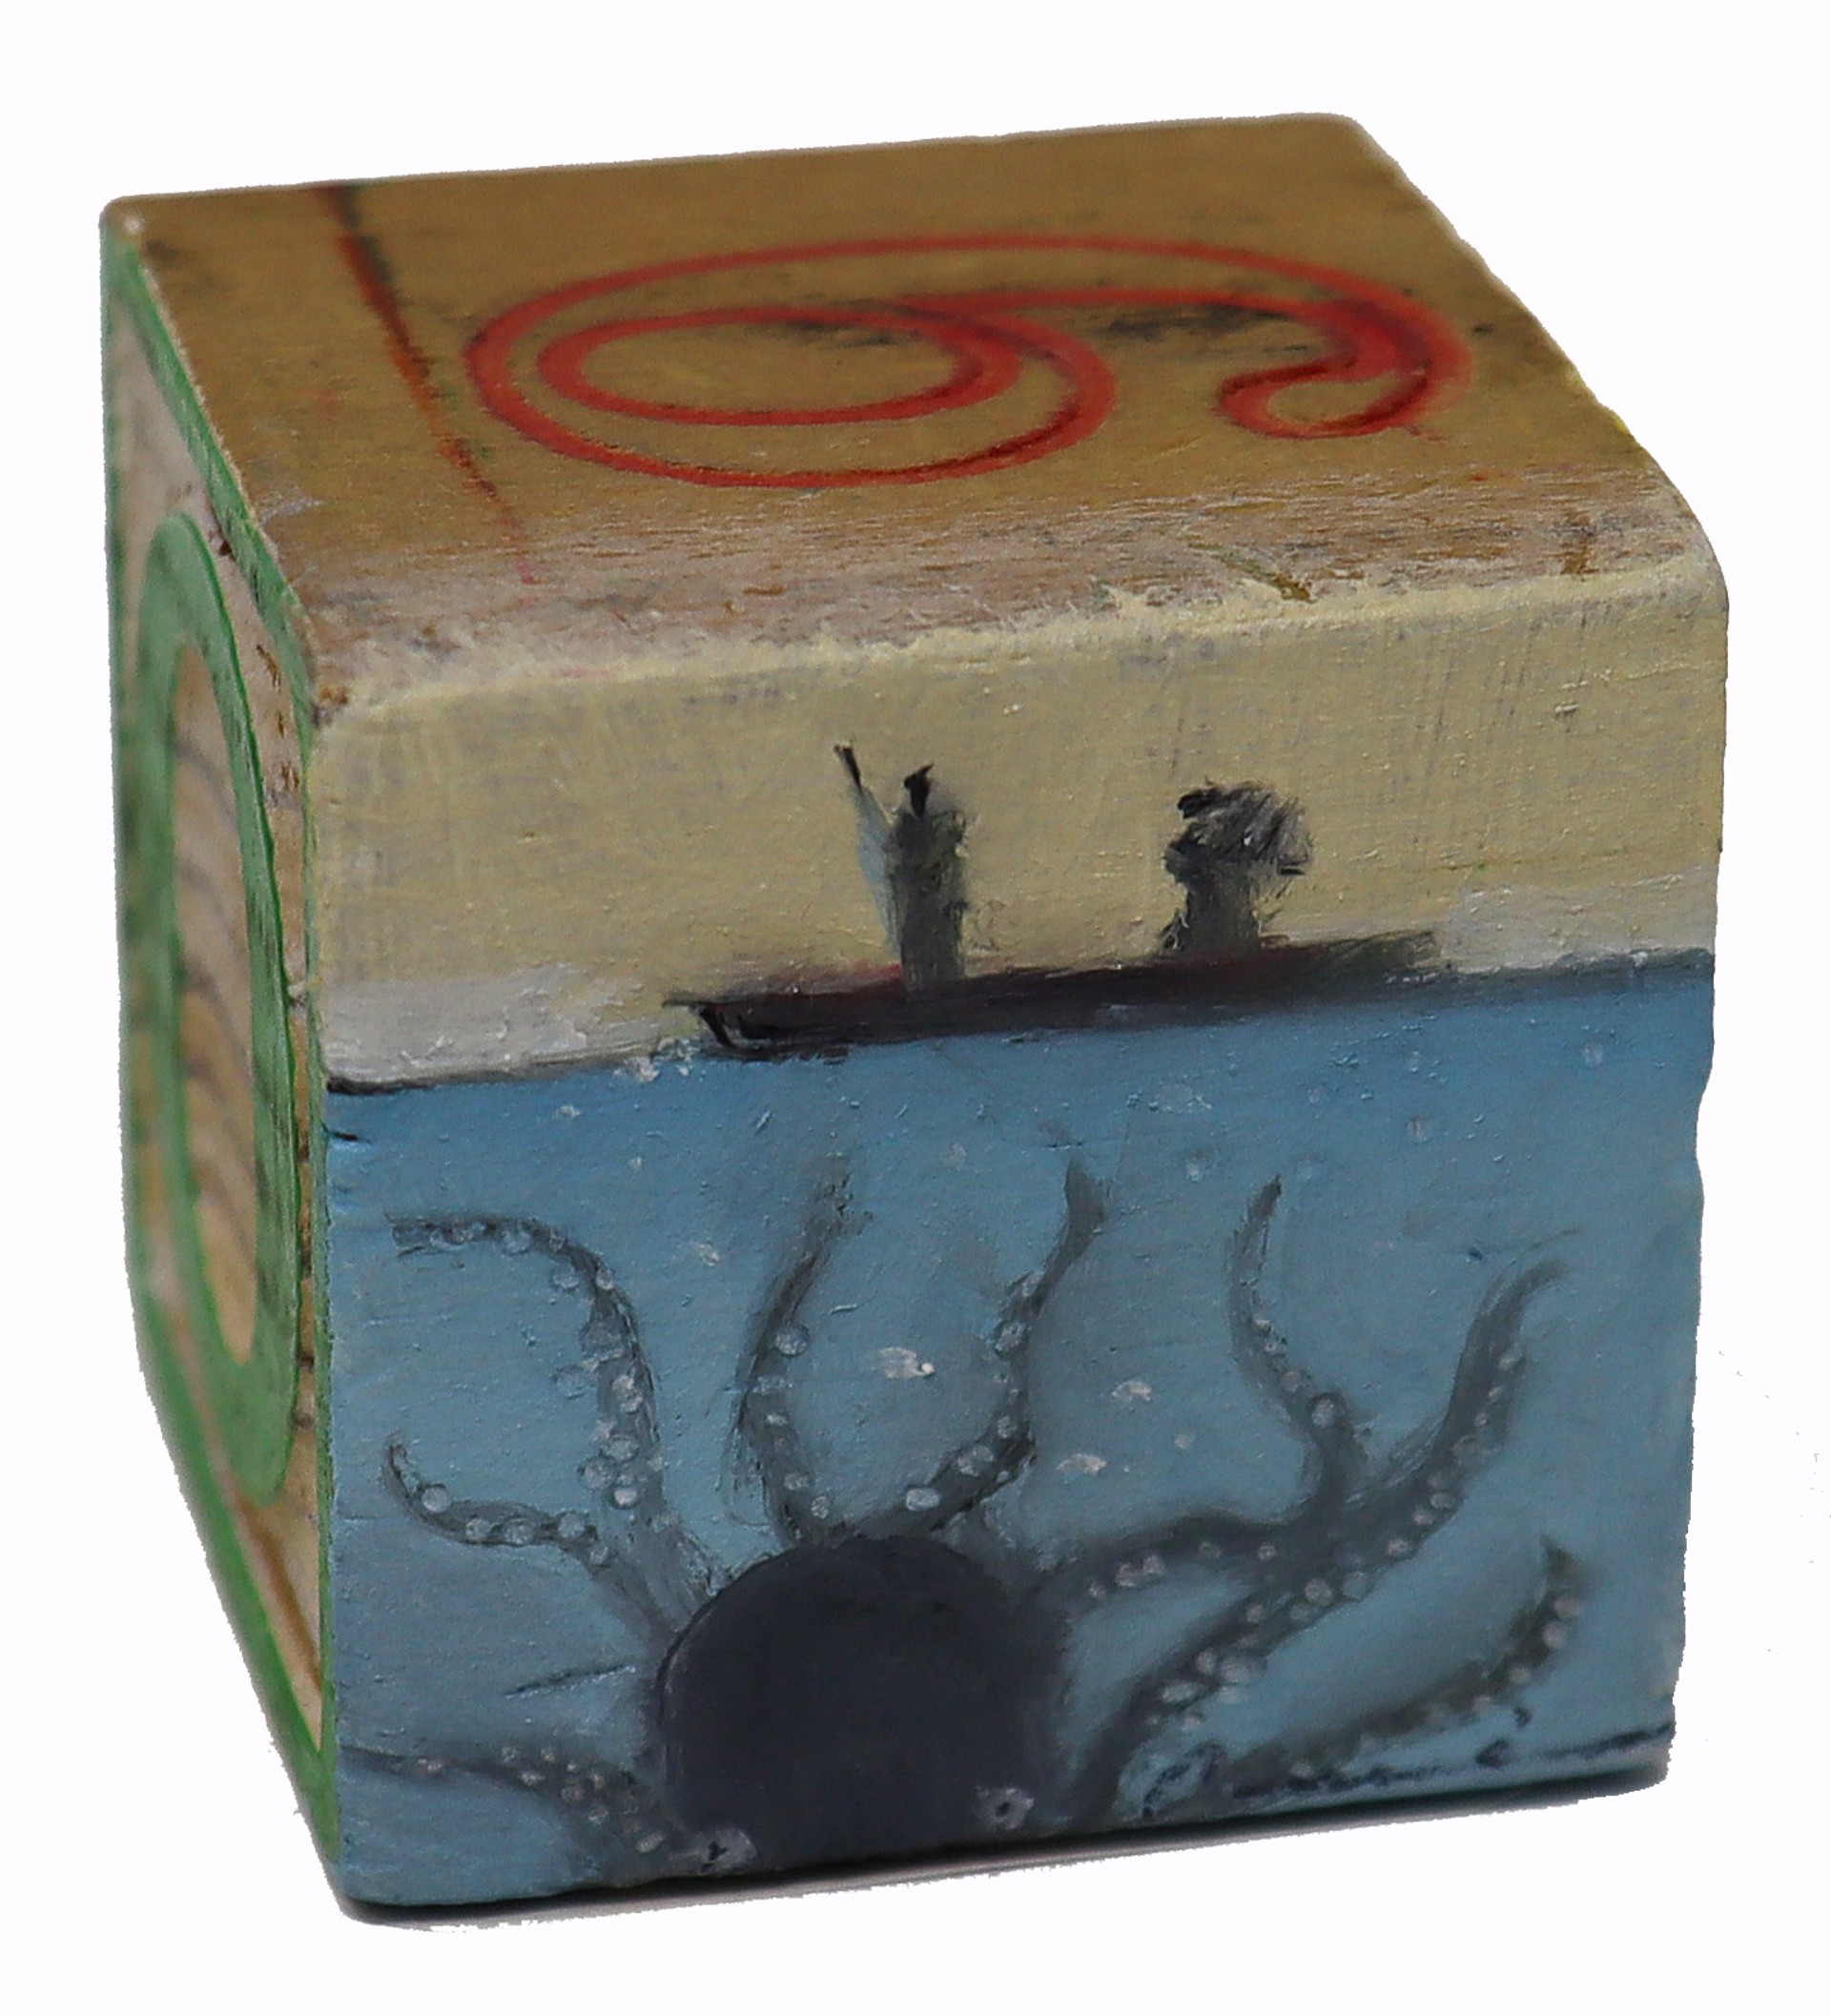 Octopus Block by Scott E. Hill